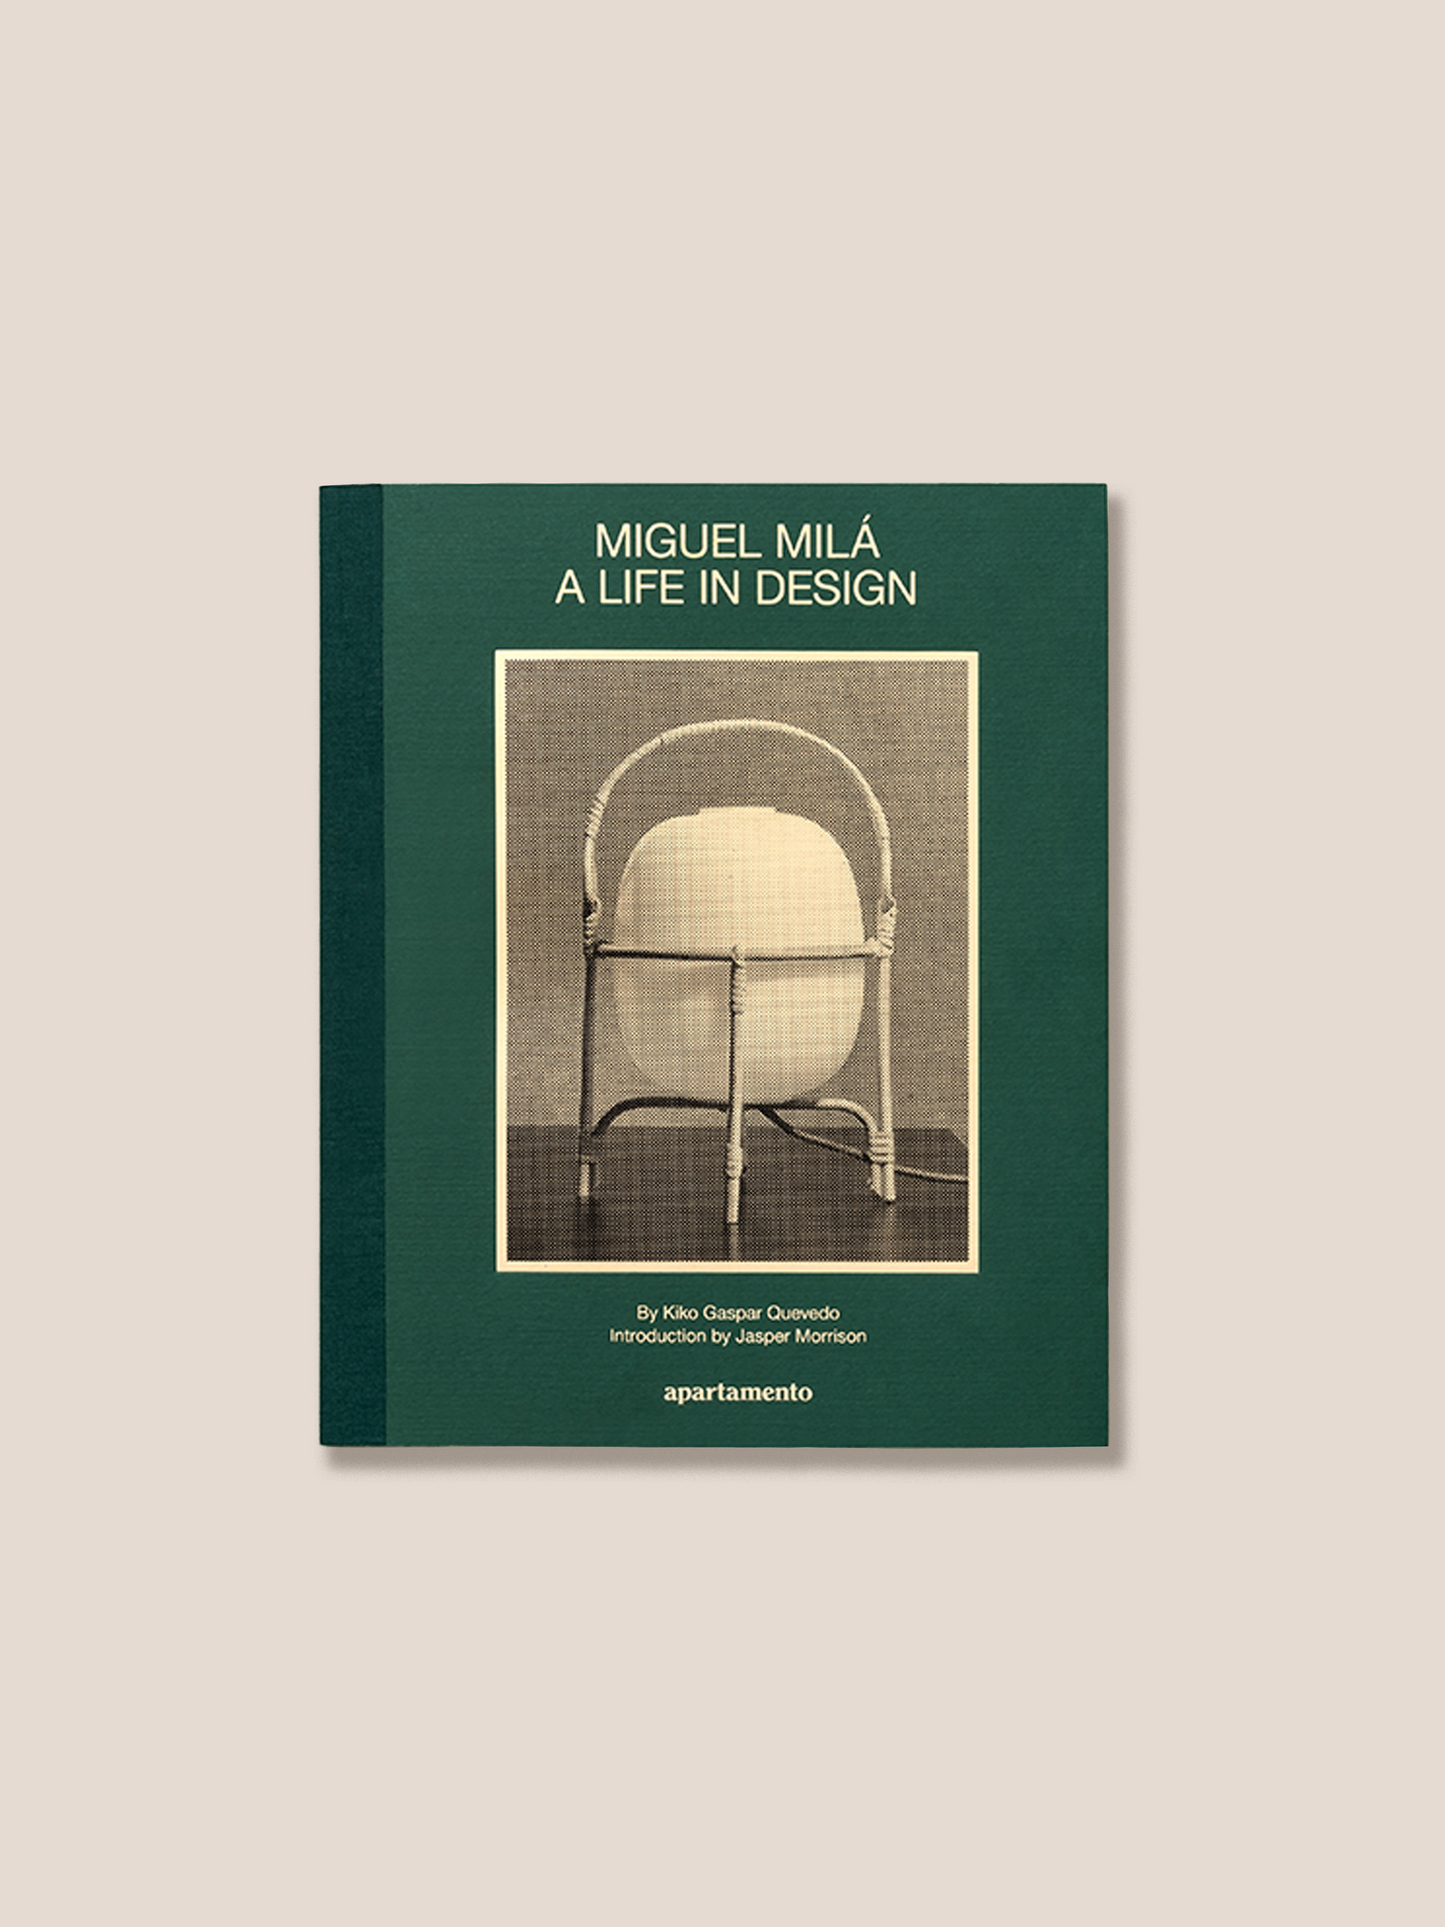 MIGUEL MILÁ A LIFE IN DESIGN - Book by Kiko Gaspar Quevedo